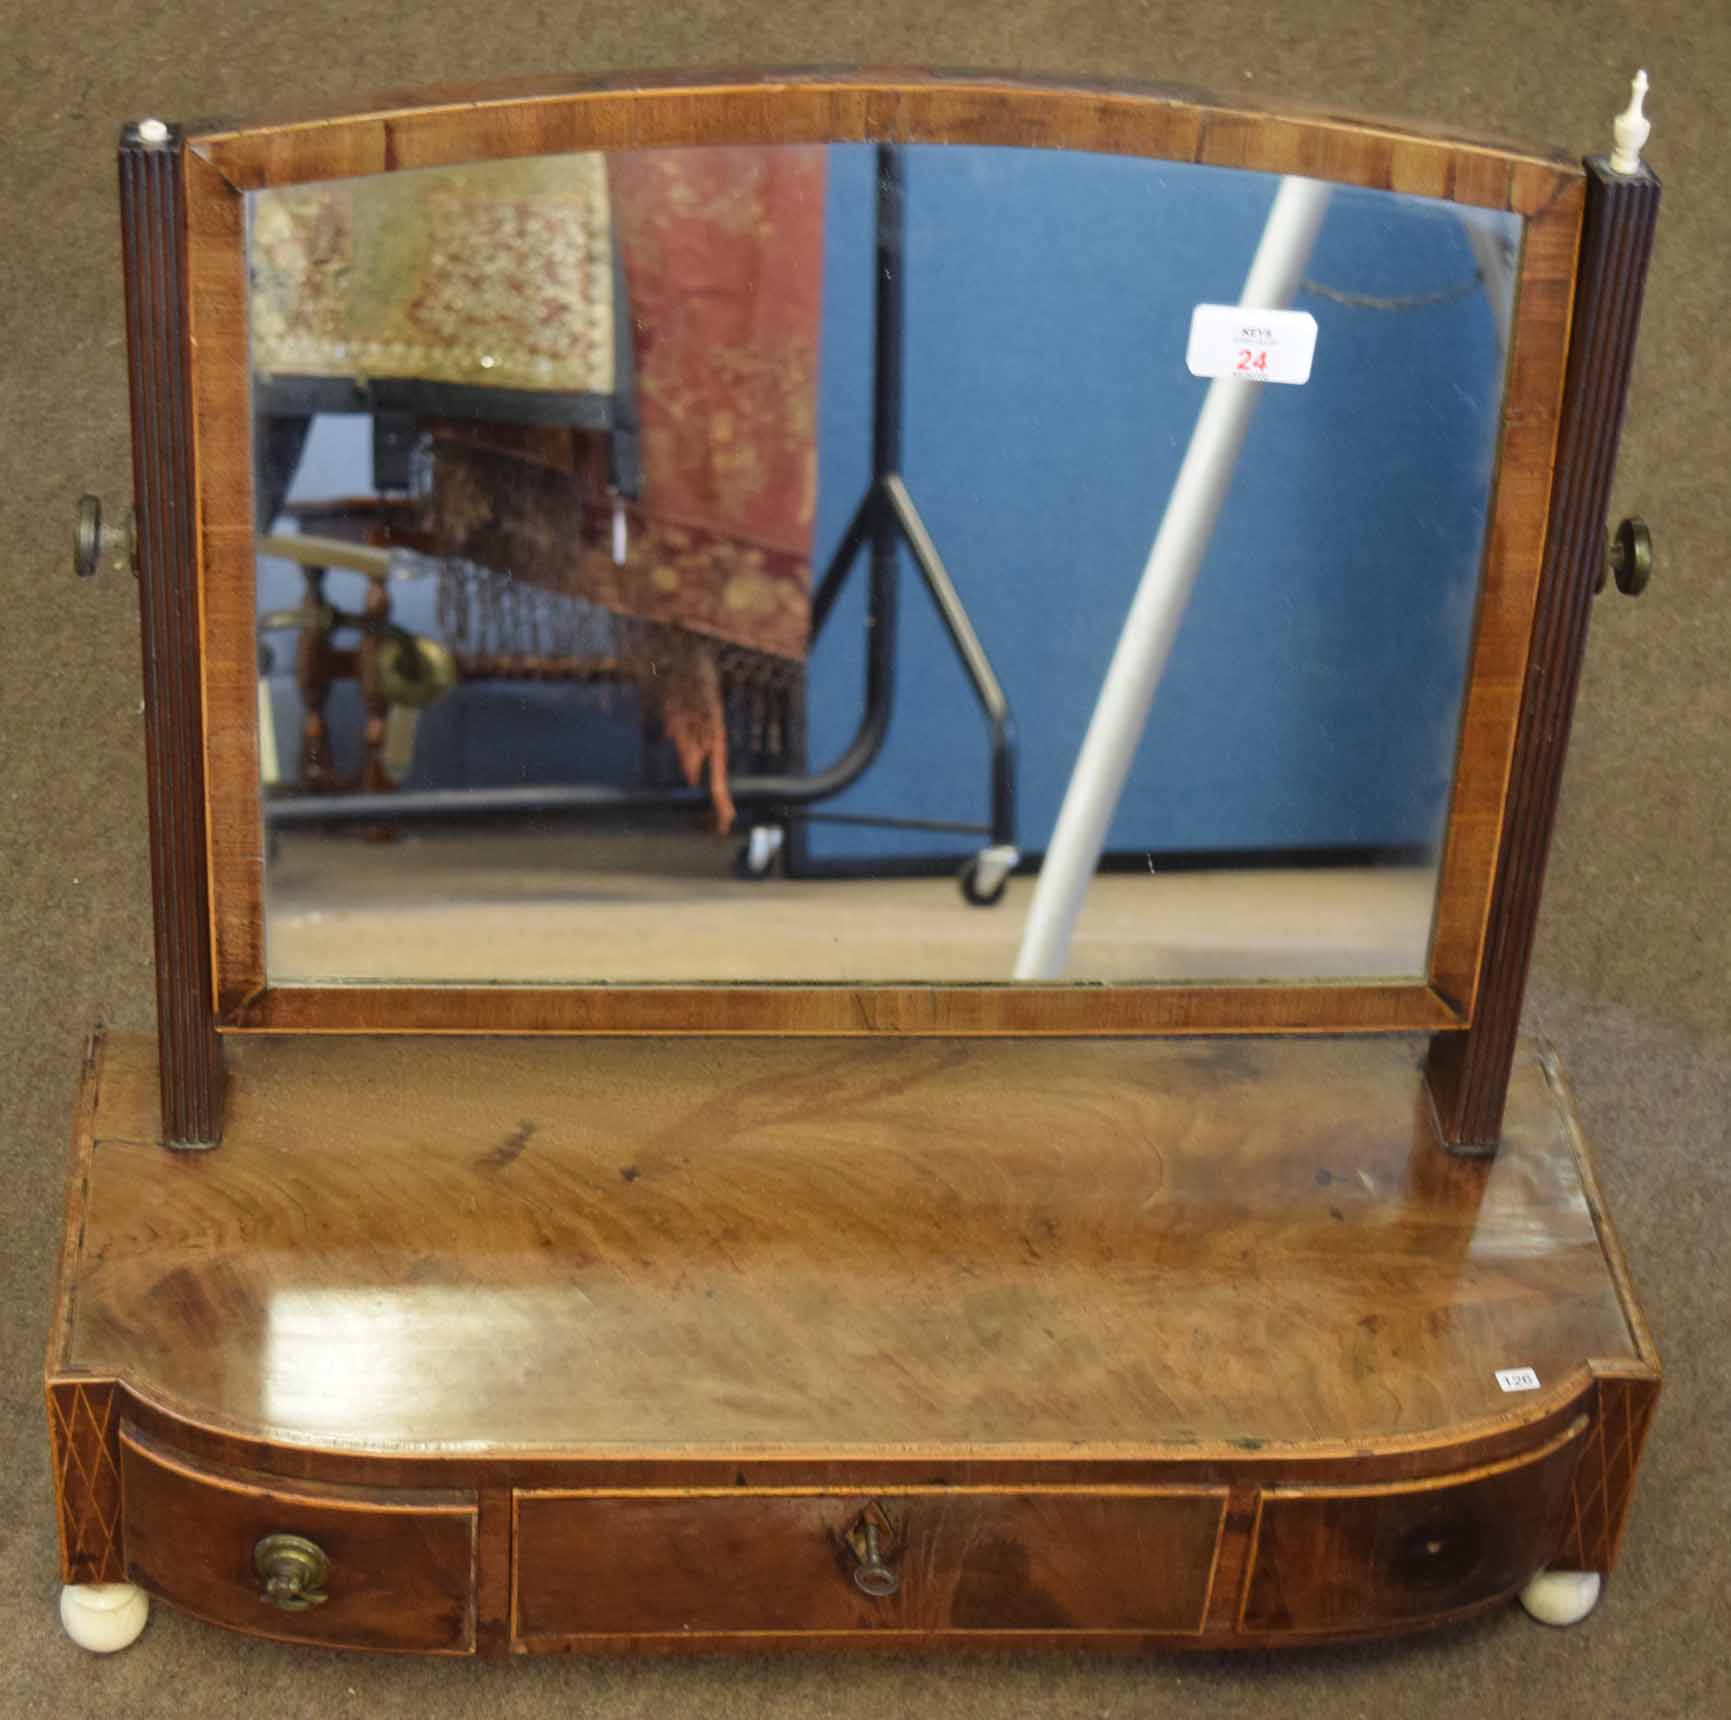 Early 19th century mahogany toilet mirror with ivory finials and similar ball feet, bowed base